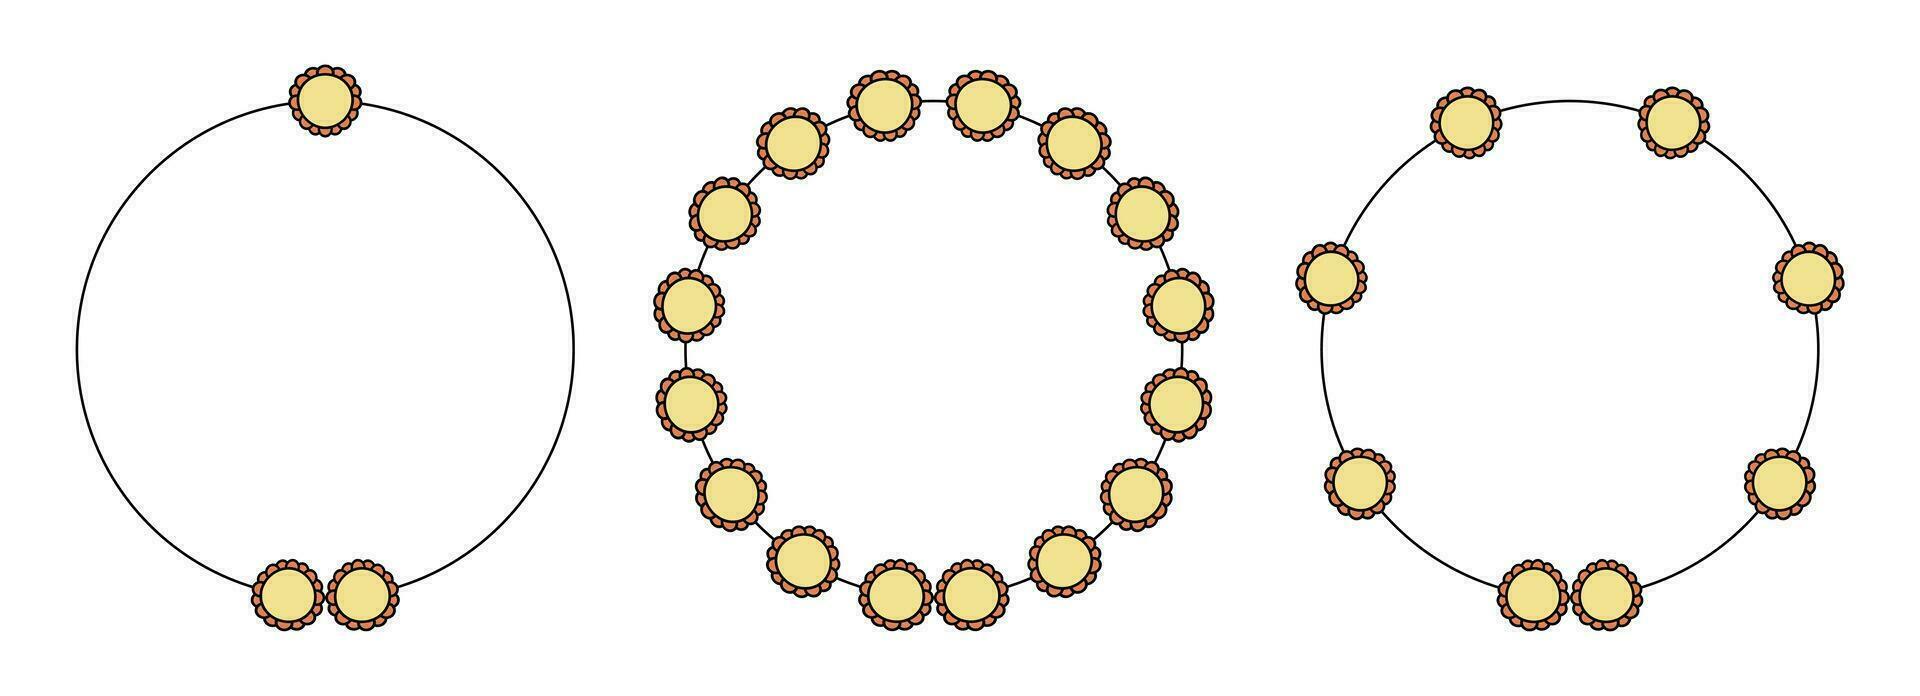 circulo marco decoración elemento con flores vector conjunto